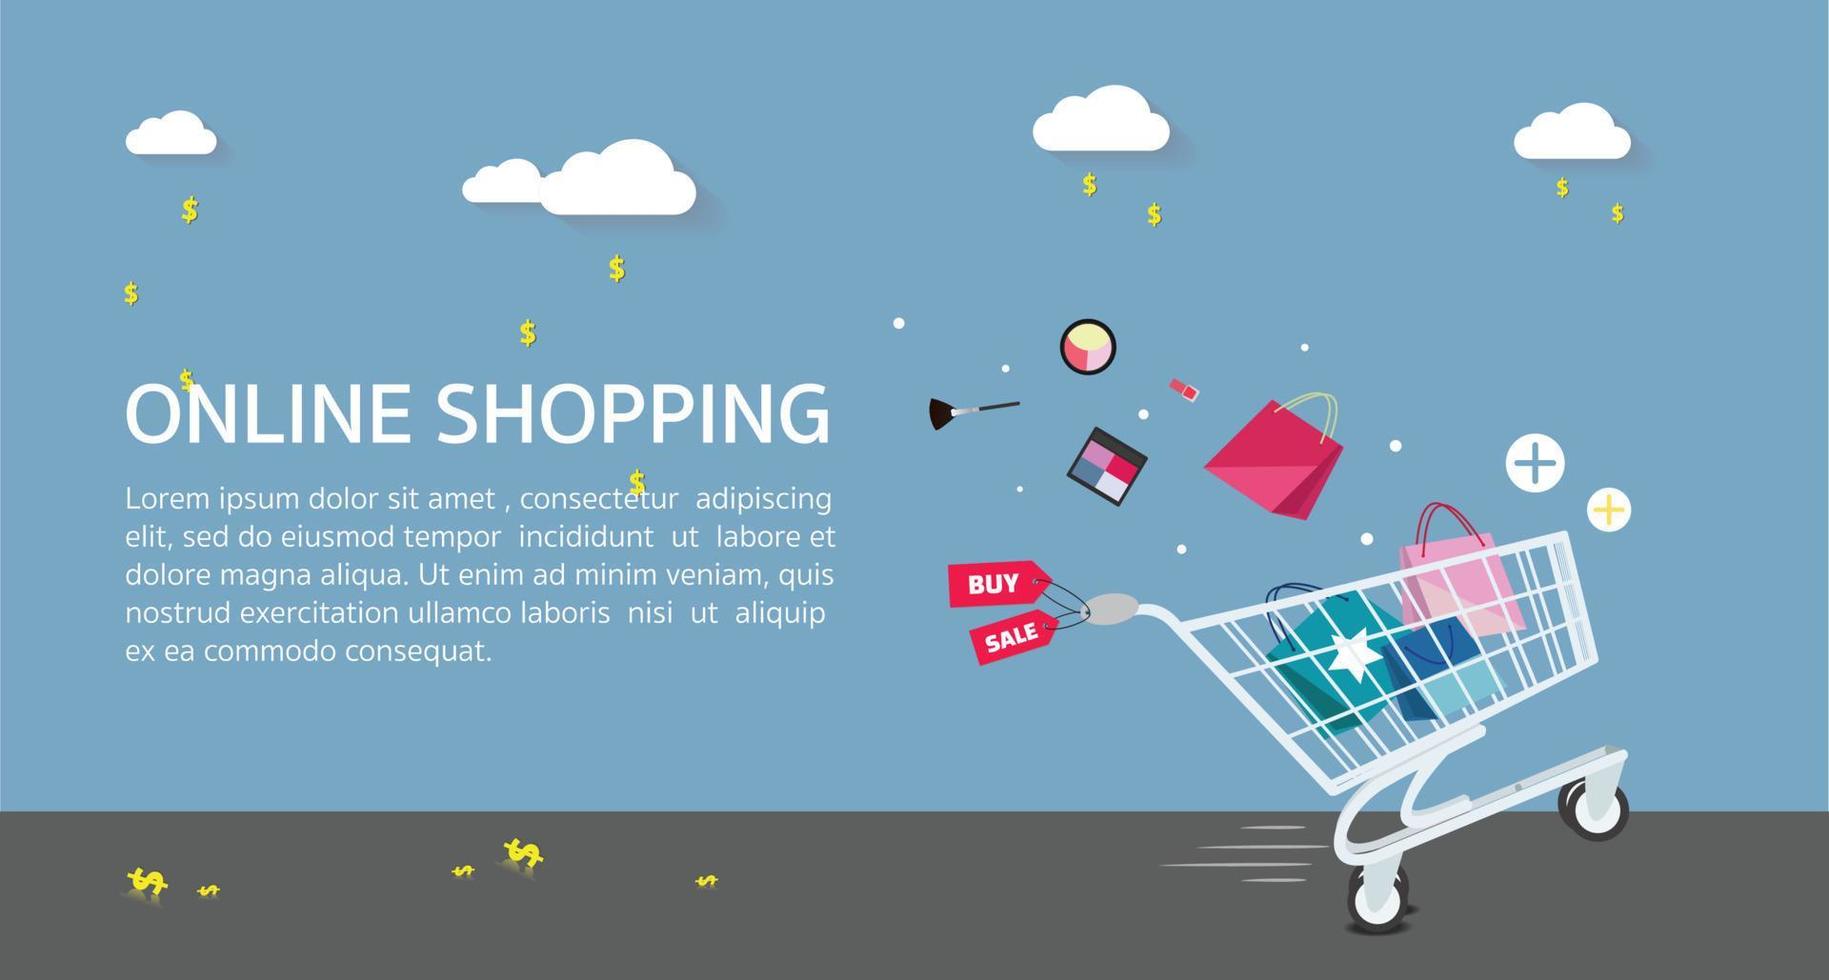 online shopping concept .vector illustratie van online shopping concept.online shopping banner, sale banner met volledige winkelwagen vector